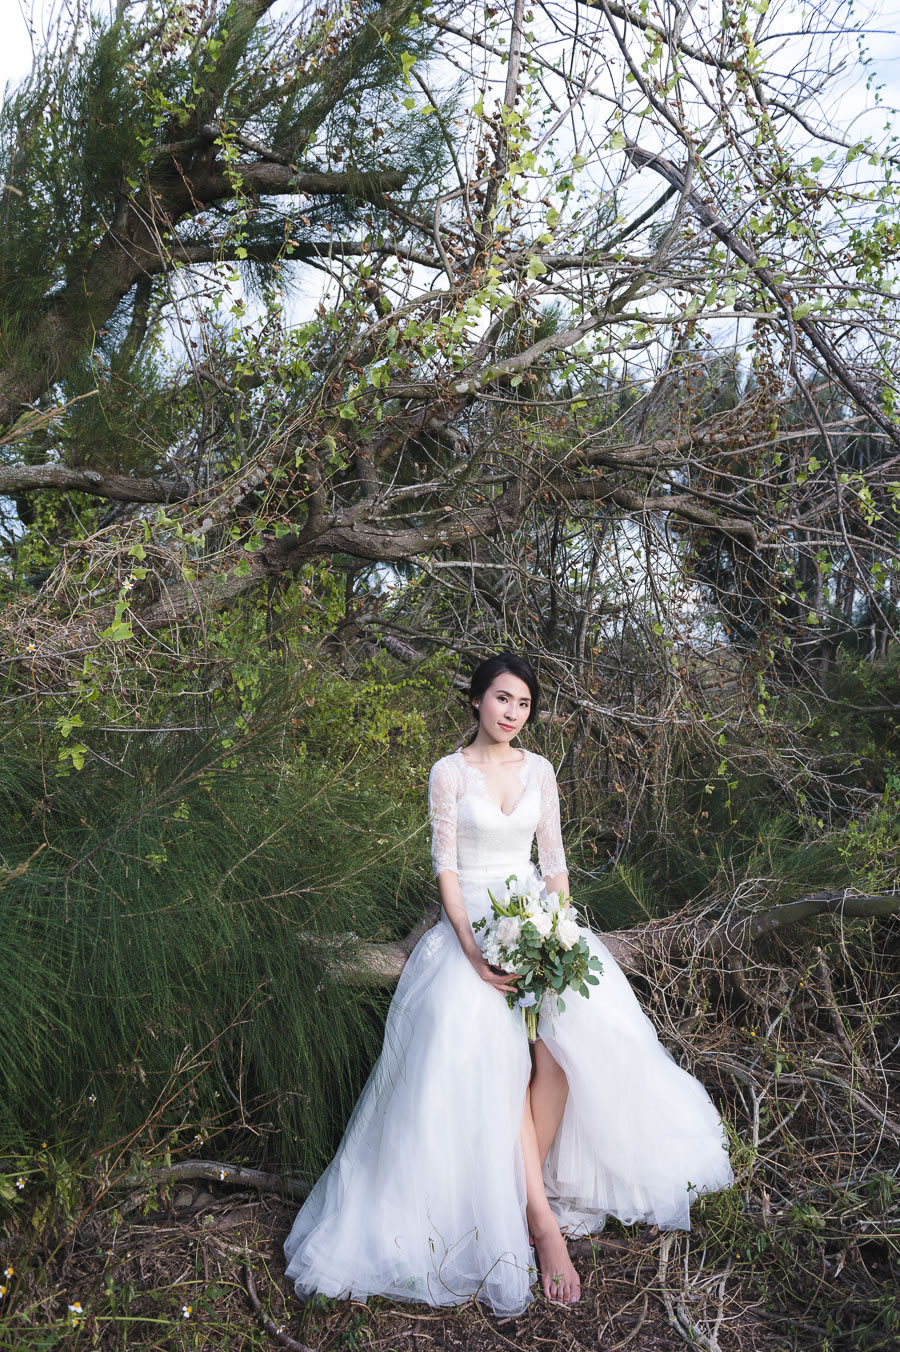 自助婚紗 | Natalie & San - 婚攝 Roger Wu, 婚禮攝影, 婚禮紀錄